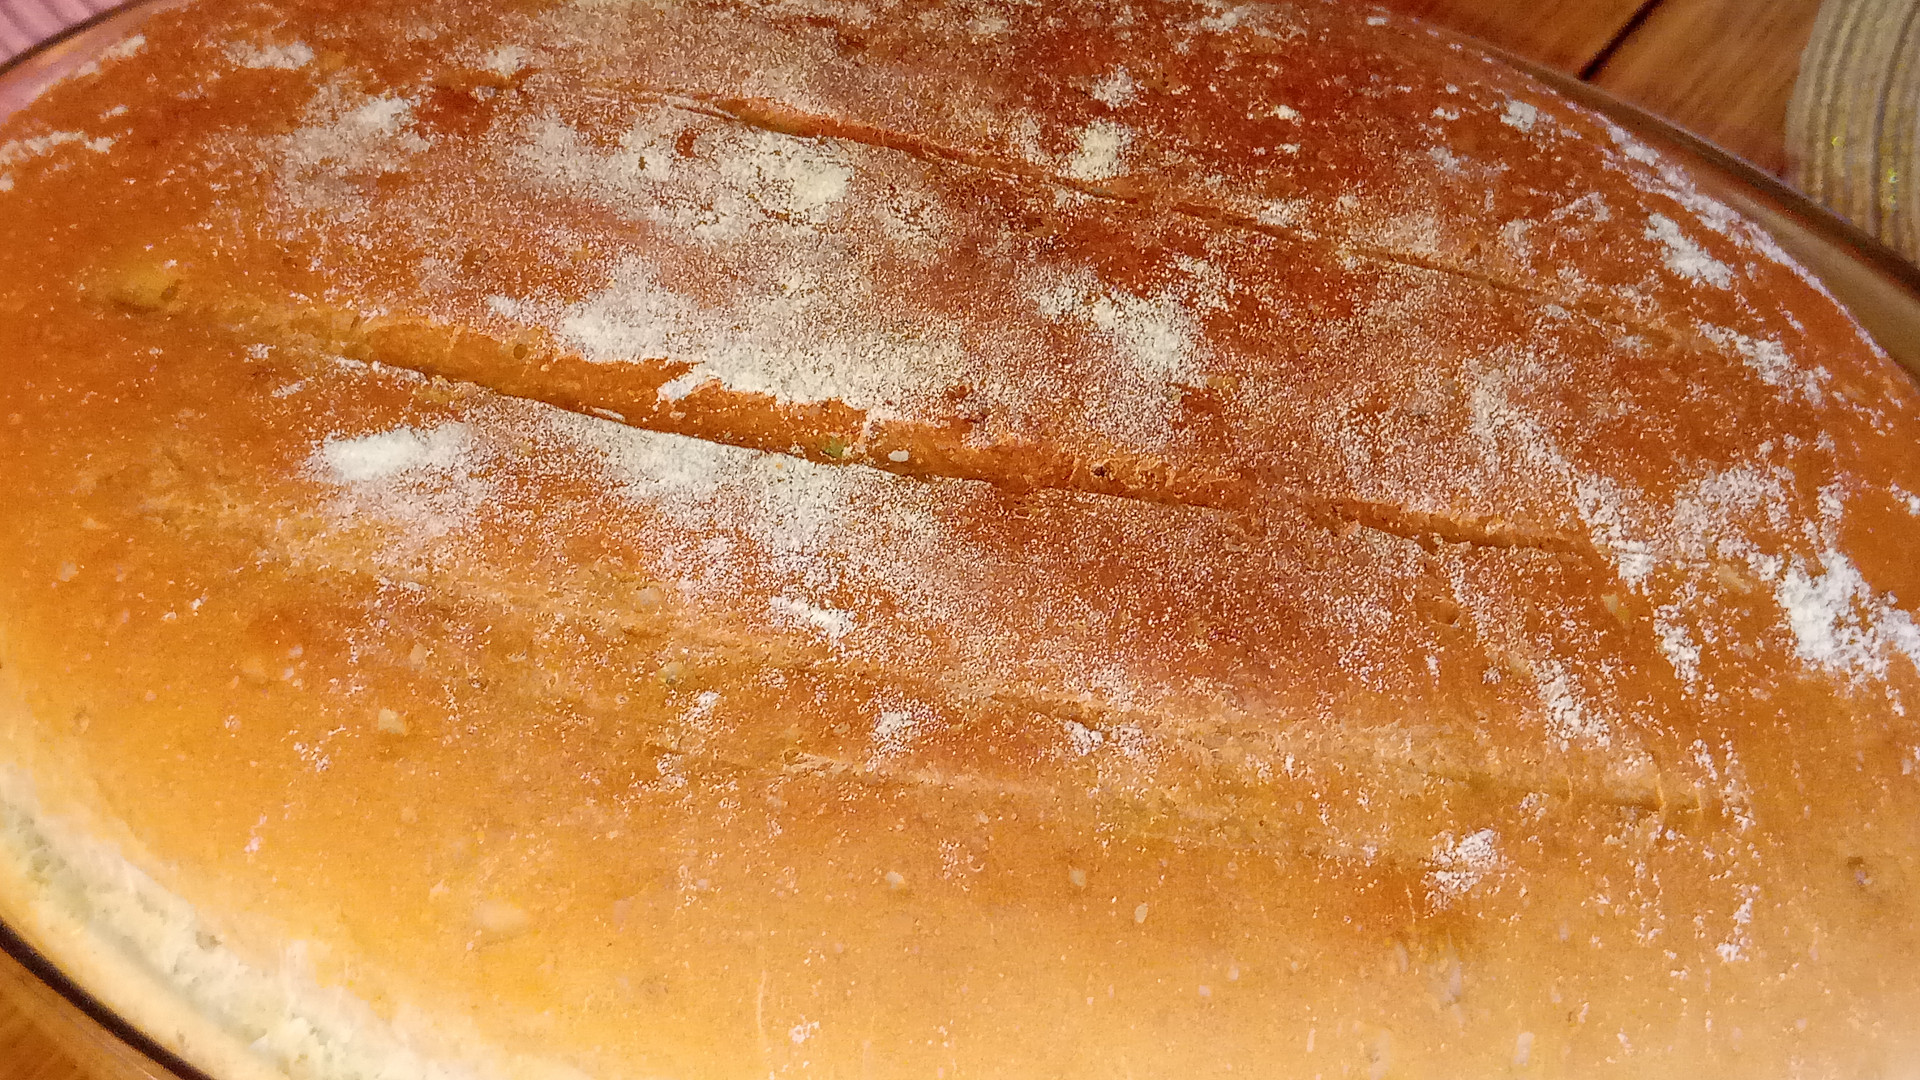 Voňavý chléb s česnekem